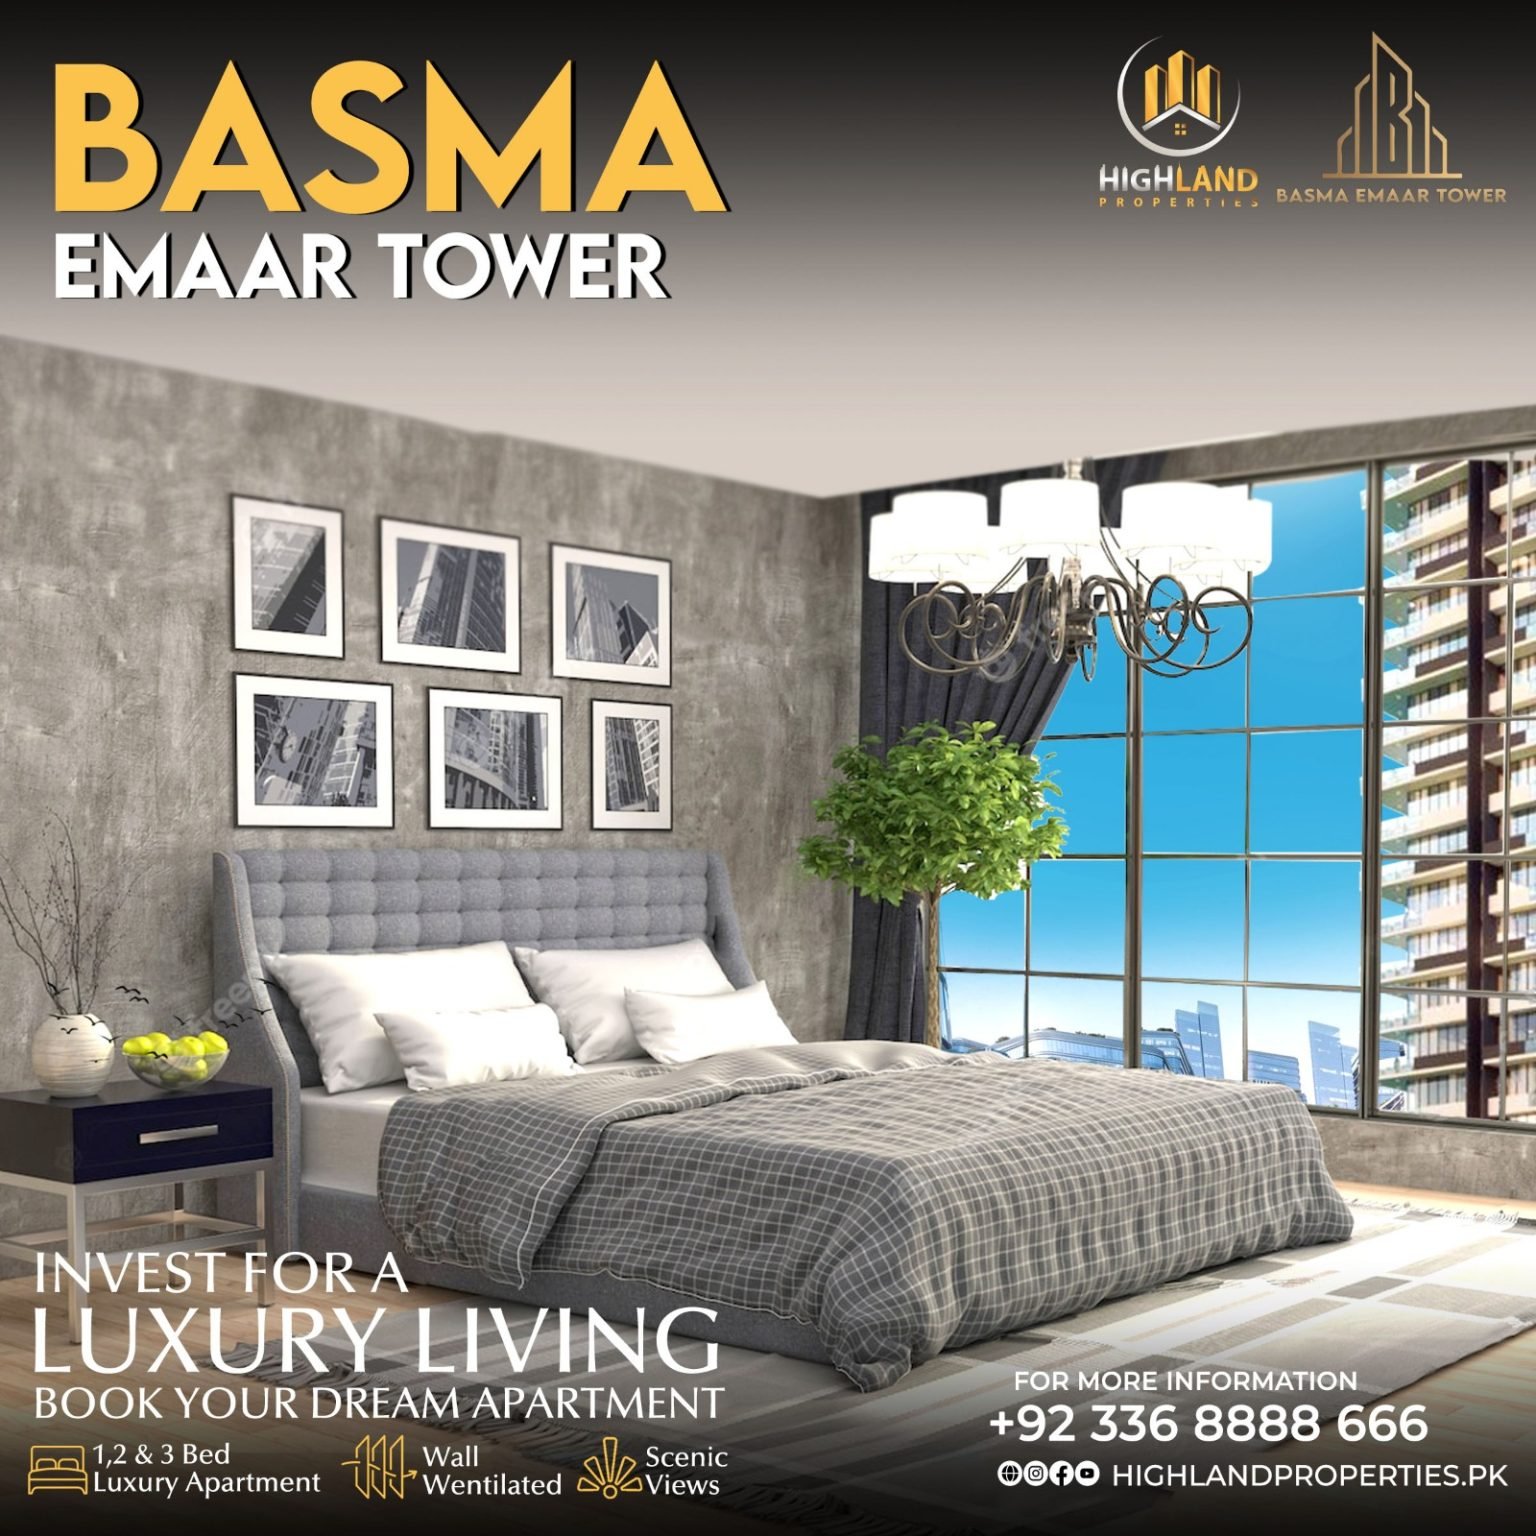 BASMA EMAAR TOWER IMAGE